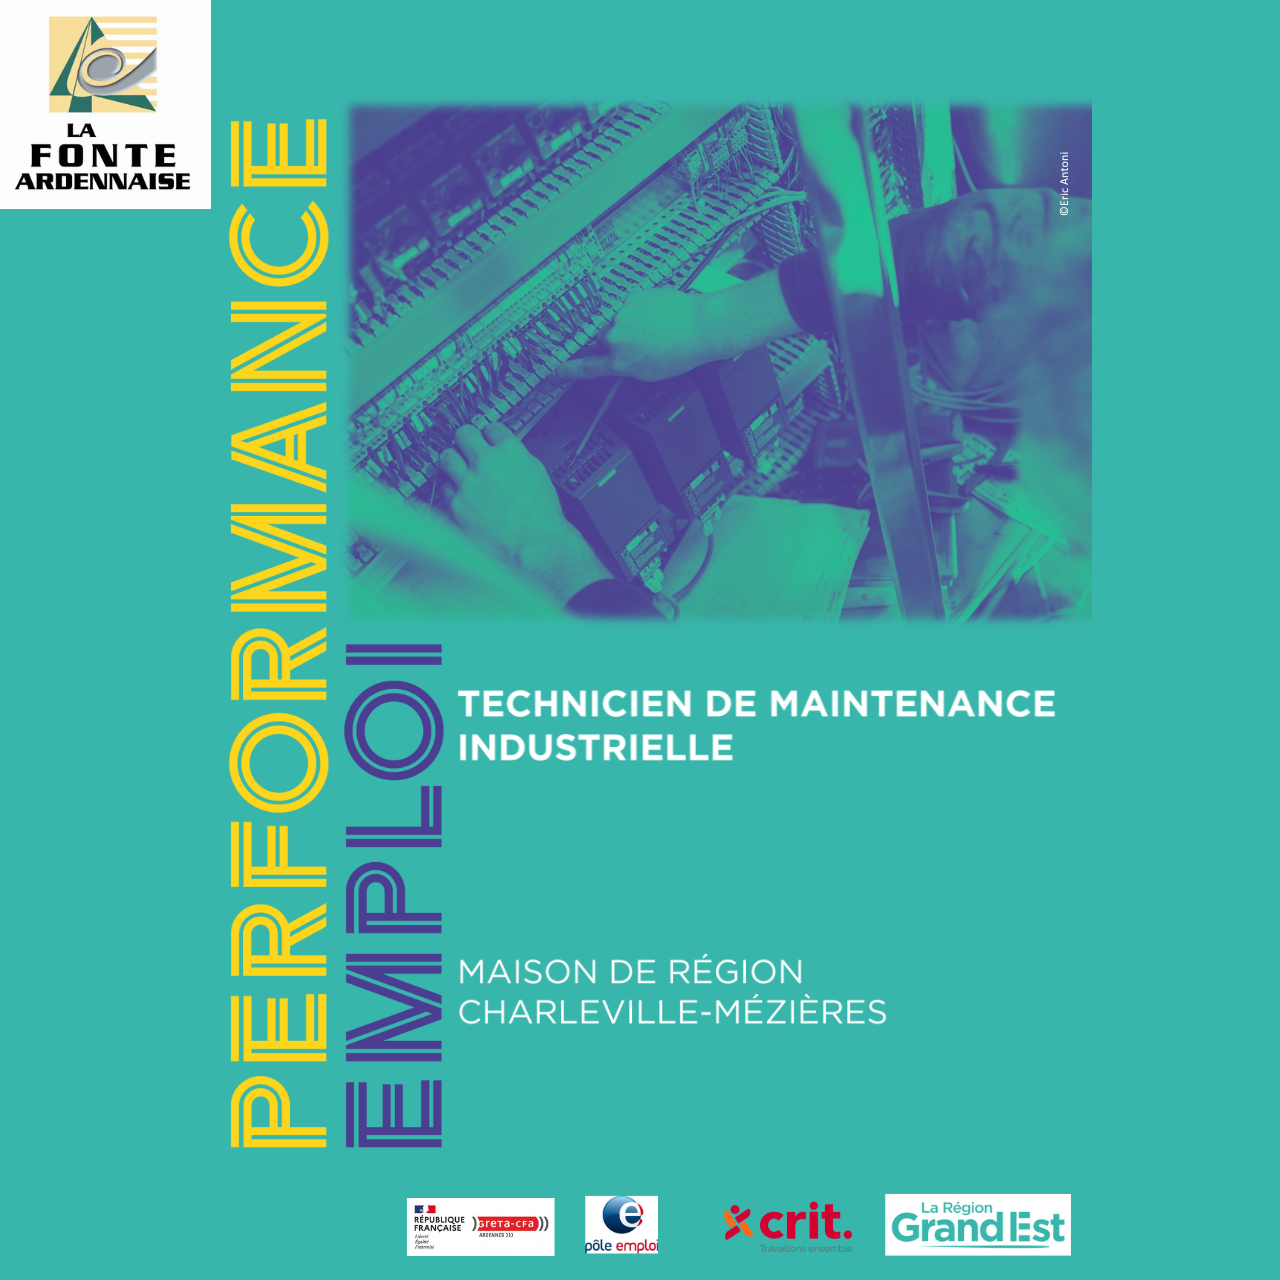 Formez-vous avec La Fonte Ardennaise et devenez Technicien de Maintenance Industrielle!